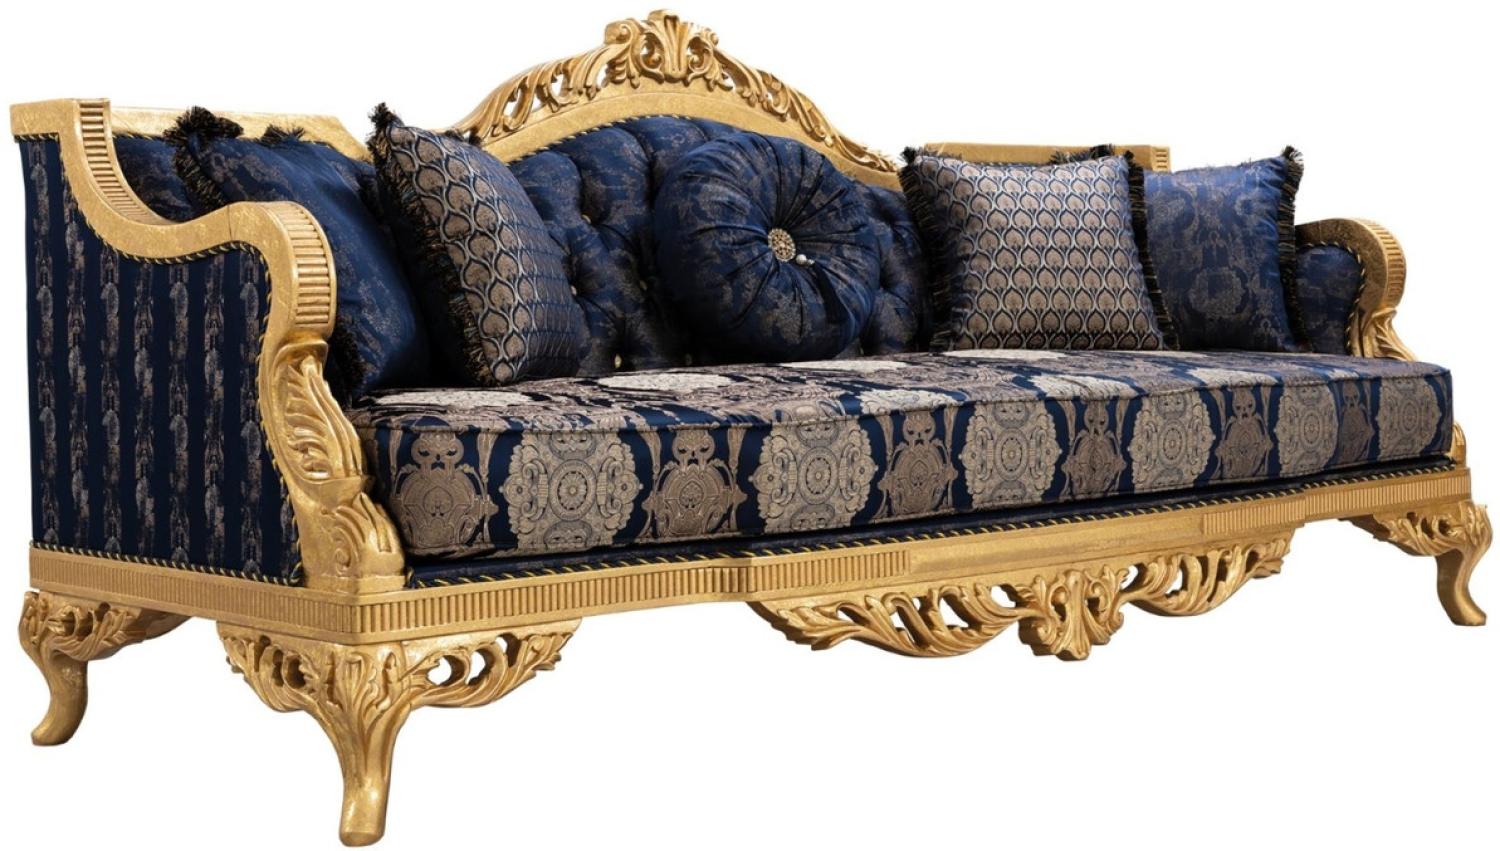 Casa Padrino Luxus Barock Sofa mit Glitzersteinen und dekorativen Kissen Dunkelblau / Gold 228 x 93 x H. 108 cm - Barock Wohnzimmer Möbel Bild 1